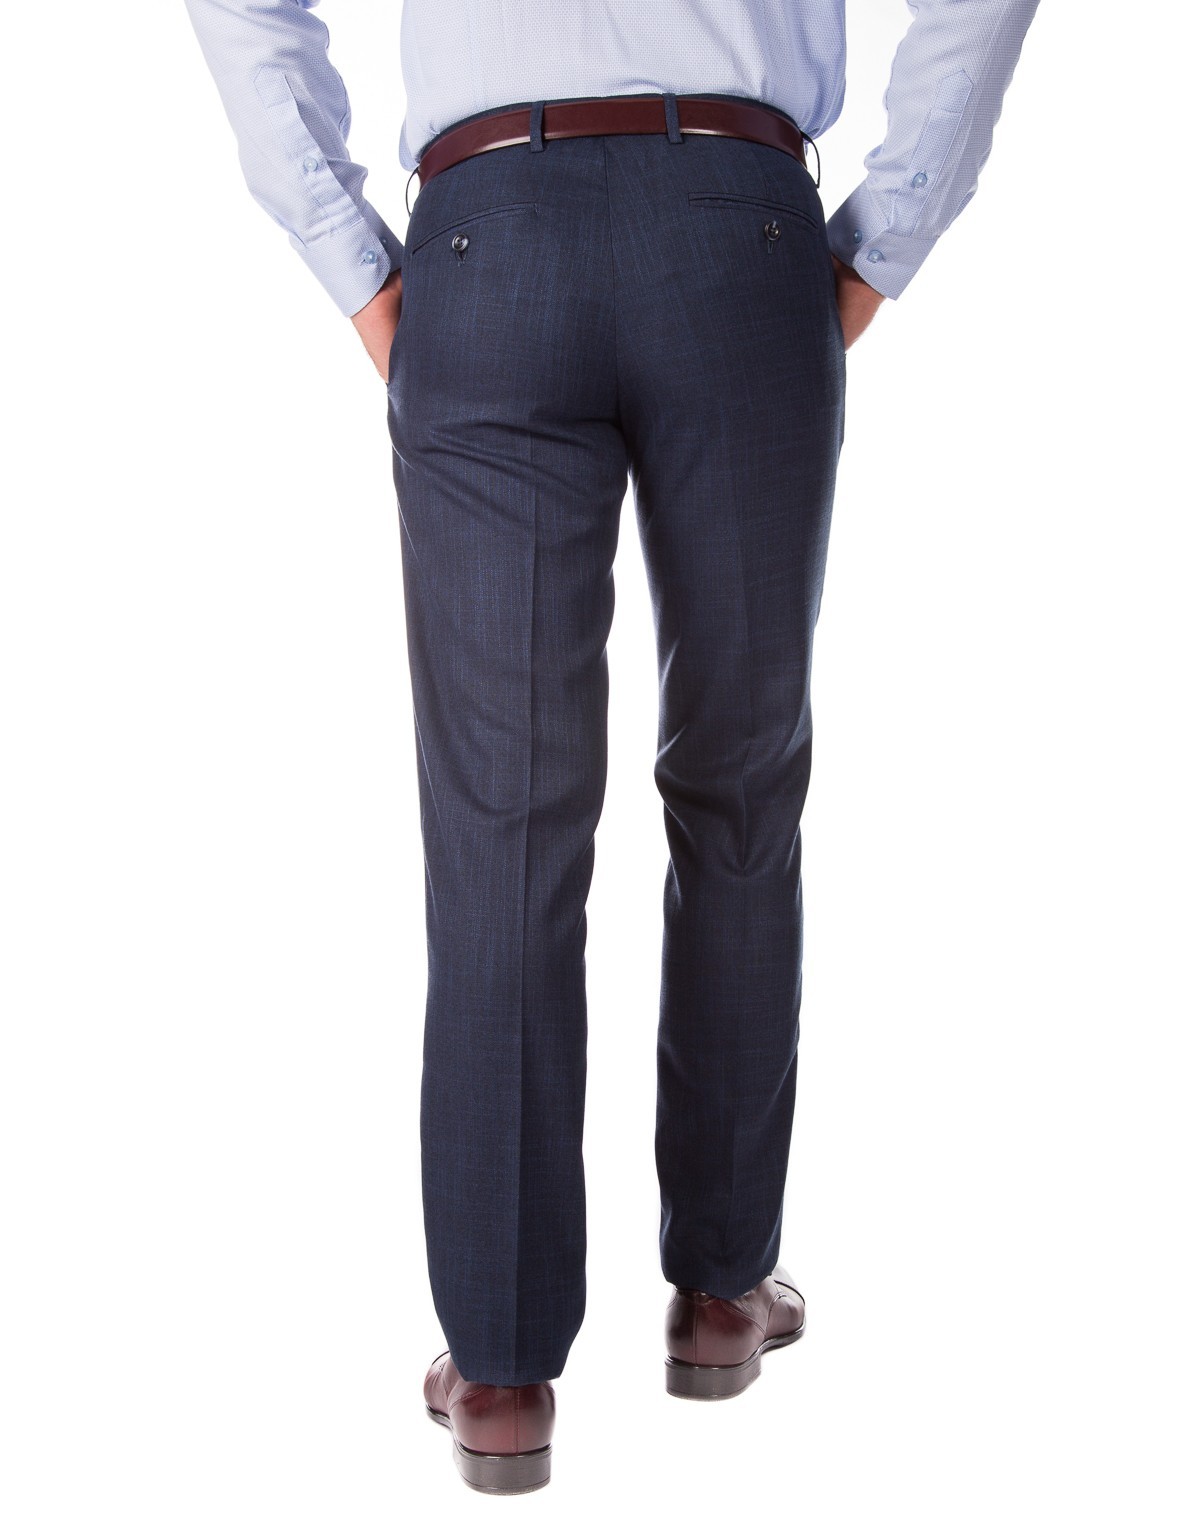 Spodnie do garnituru SM0330 - spodnie